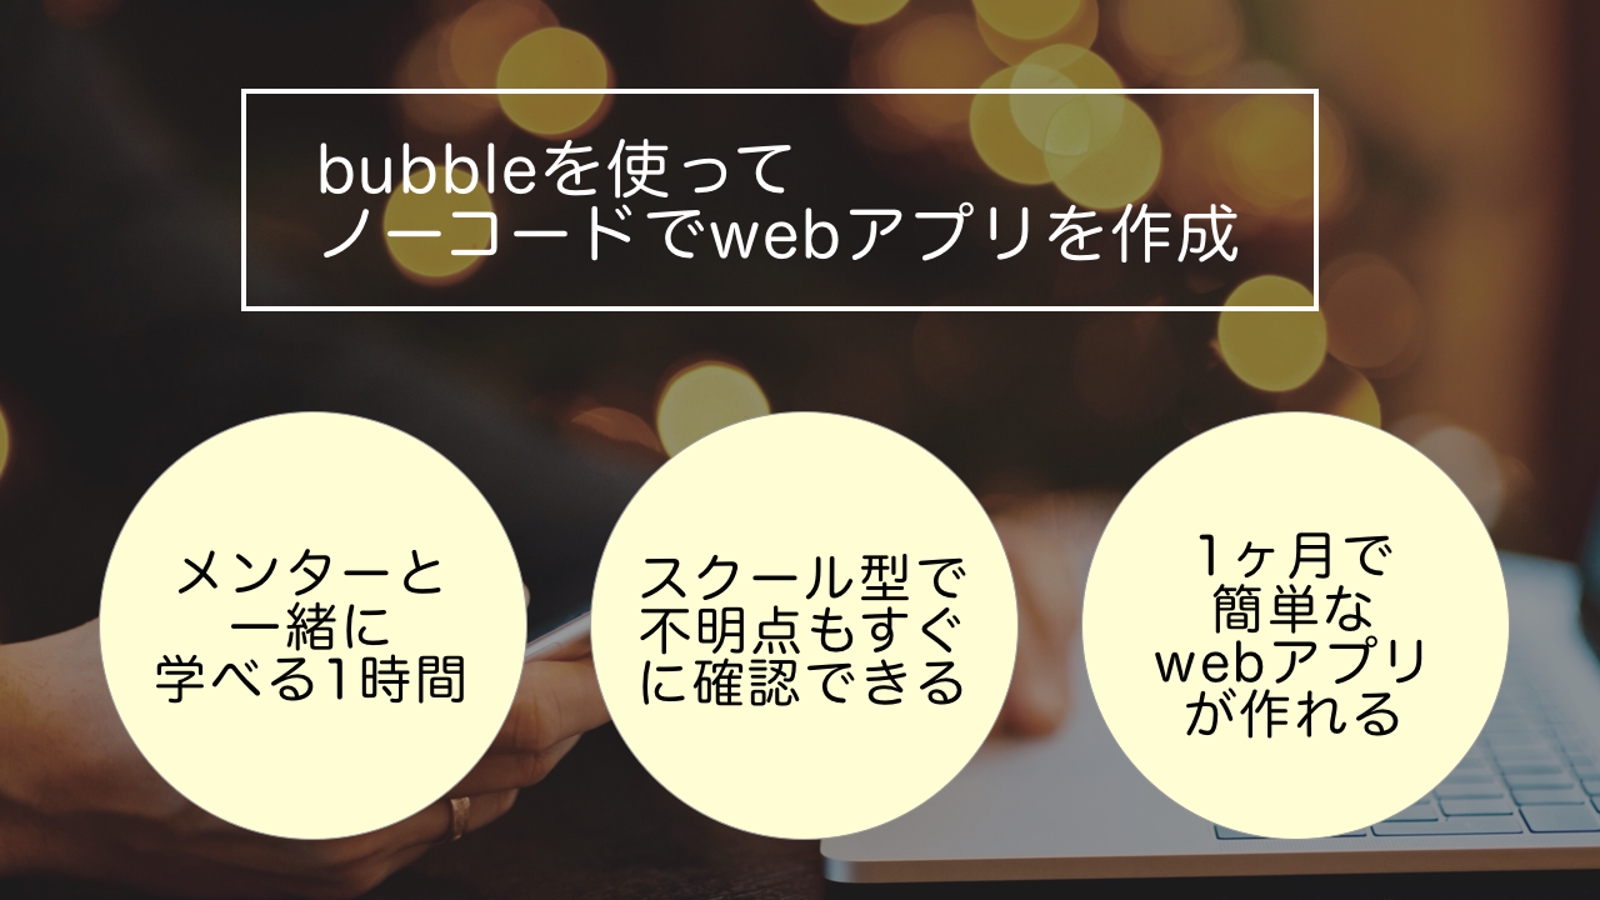 【未経験OK】ノーコードでwebアプリを作ろうbubble初心者入門-image1